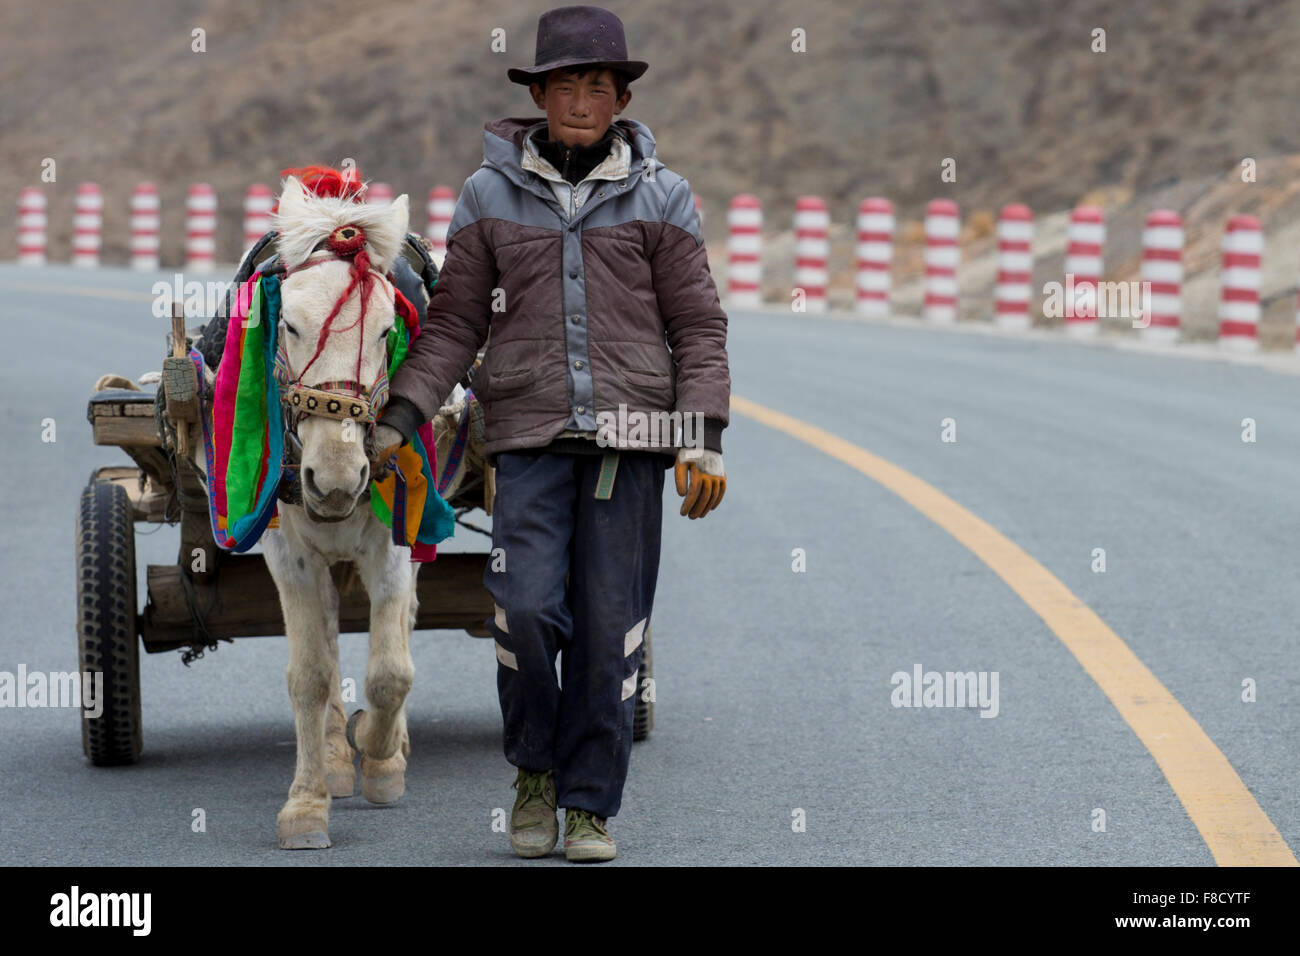 Un adulto joven agricultor con su caballo caminando en la carretera Foto de stock